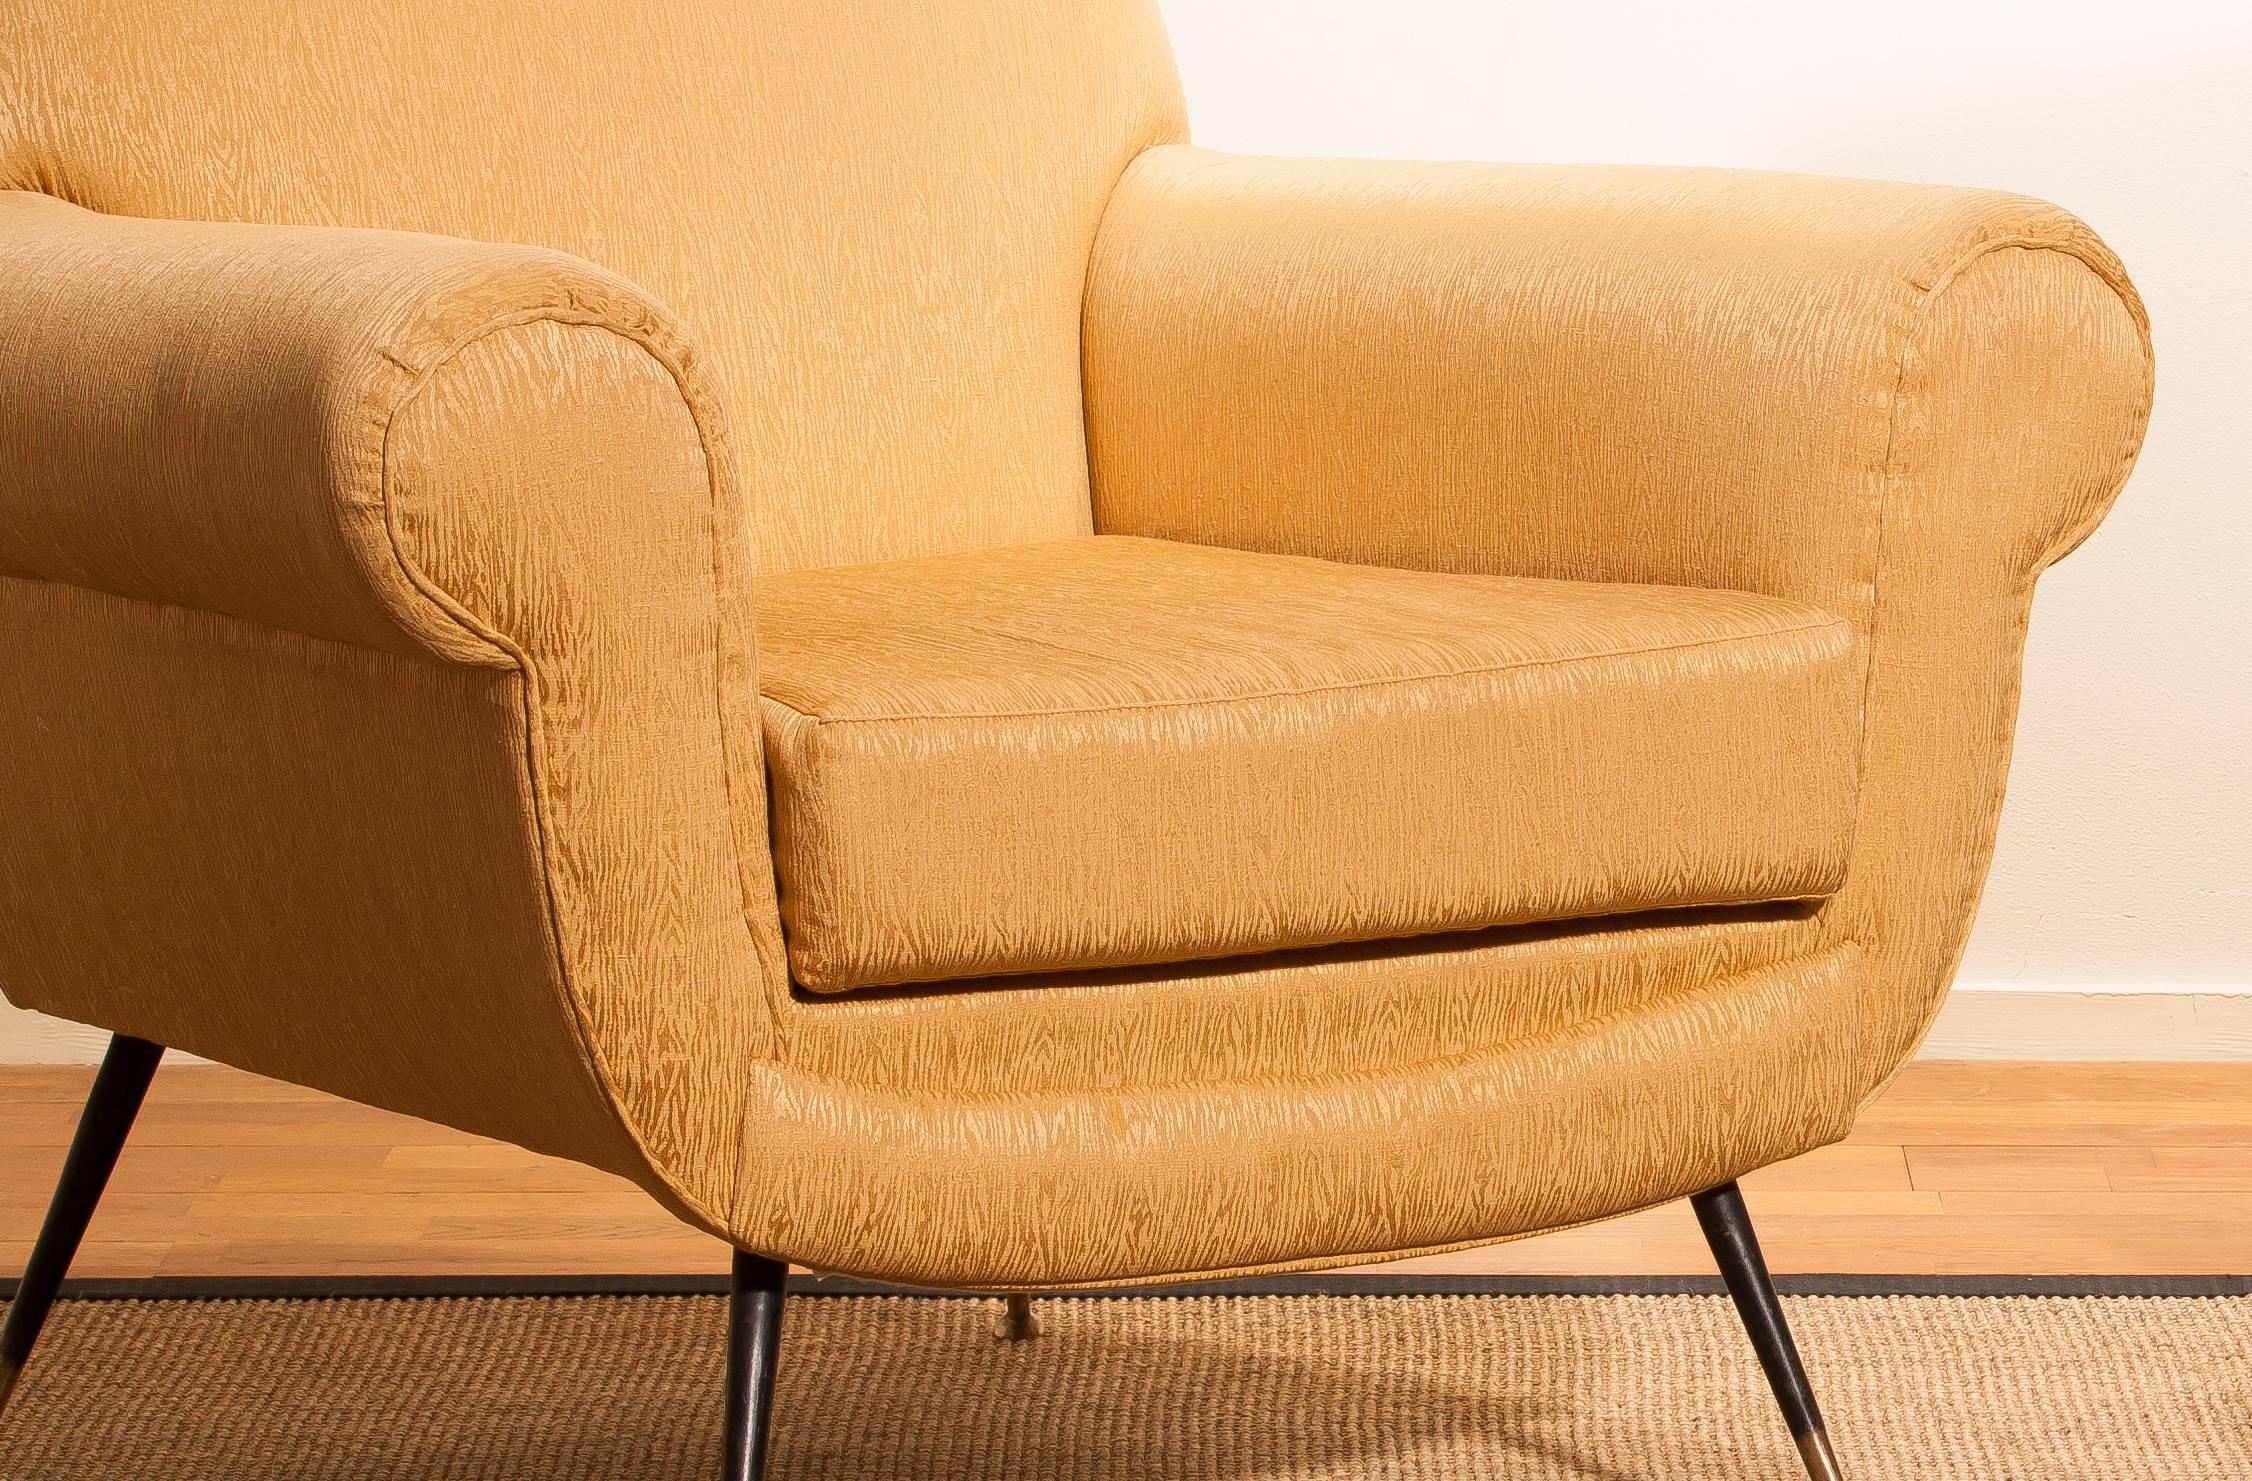 Golden Jacquard Upholstered Easy Chairs by Gigi Radice for Minotti, Brass Legs. 8